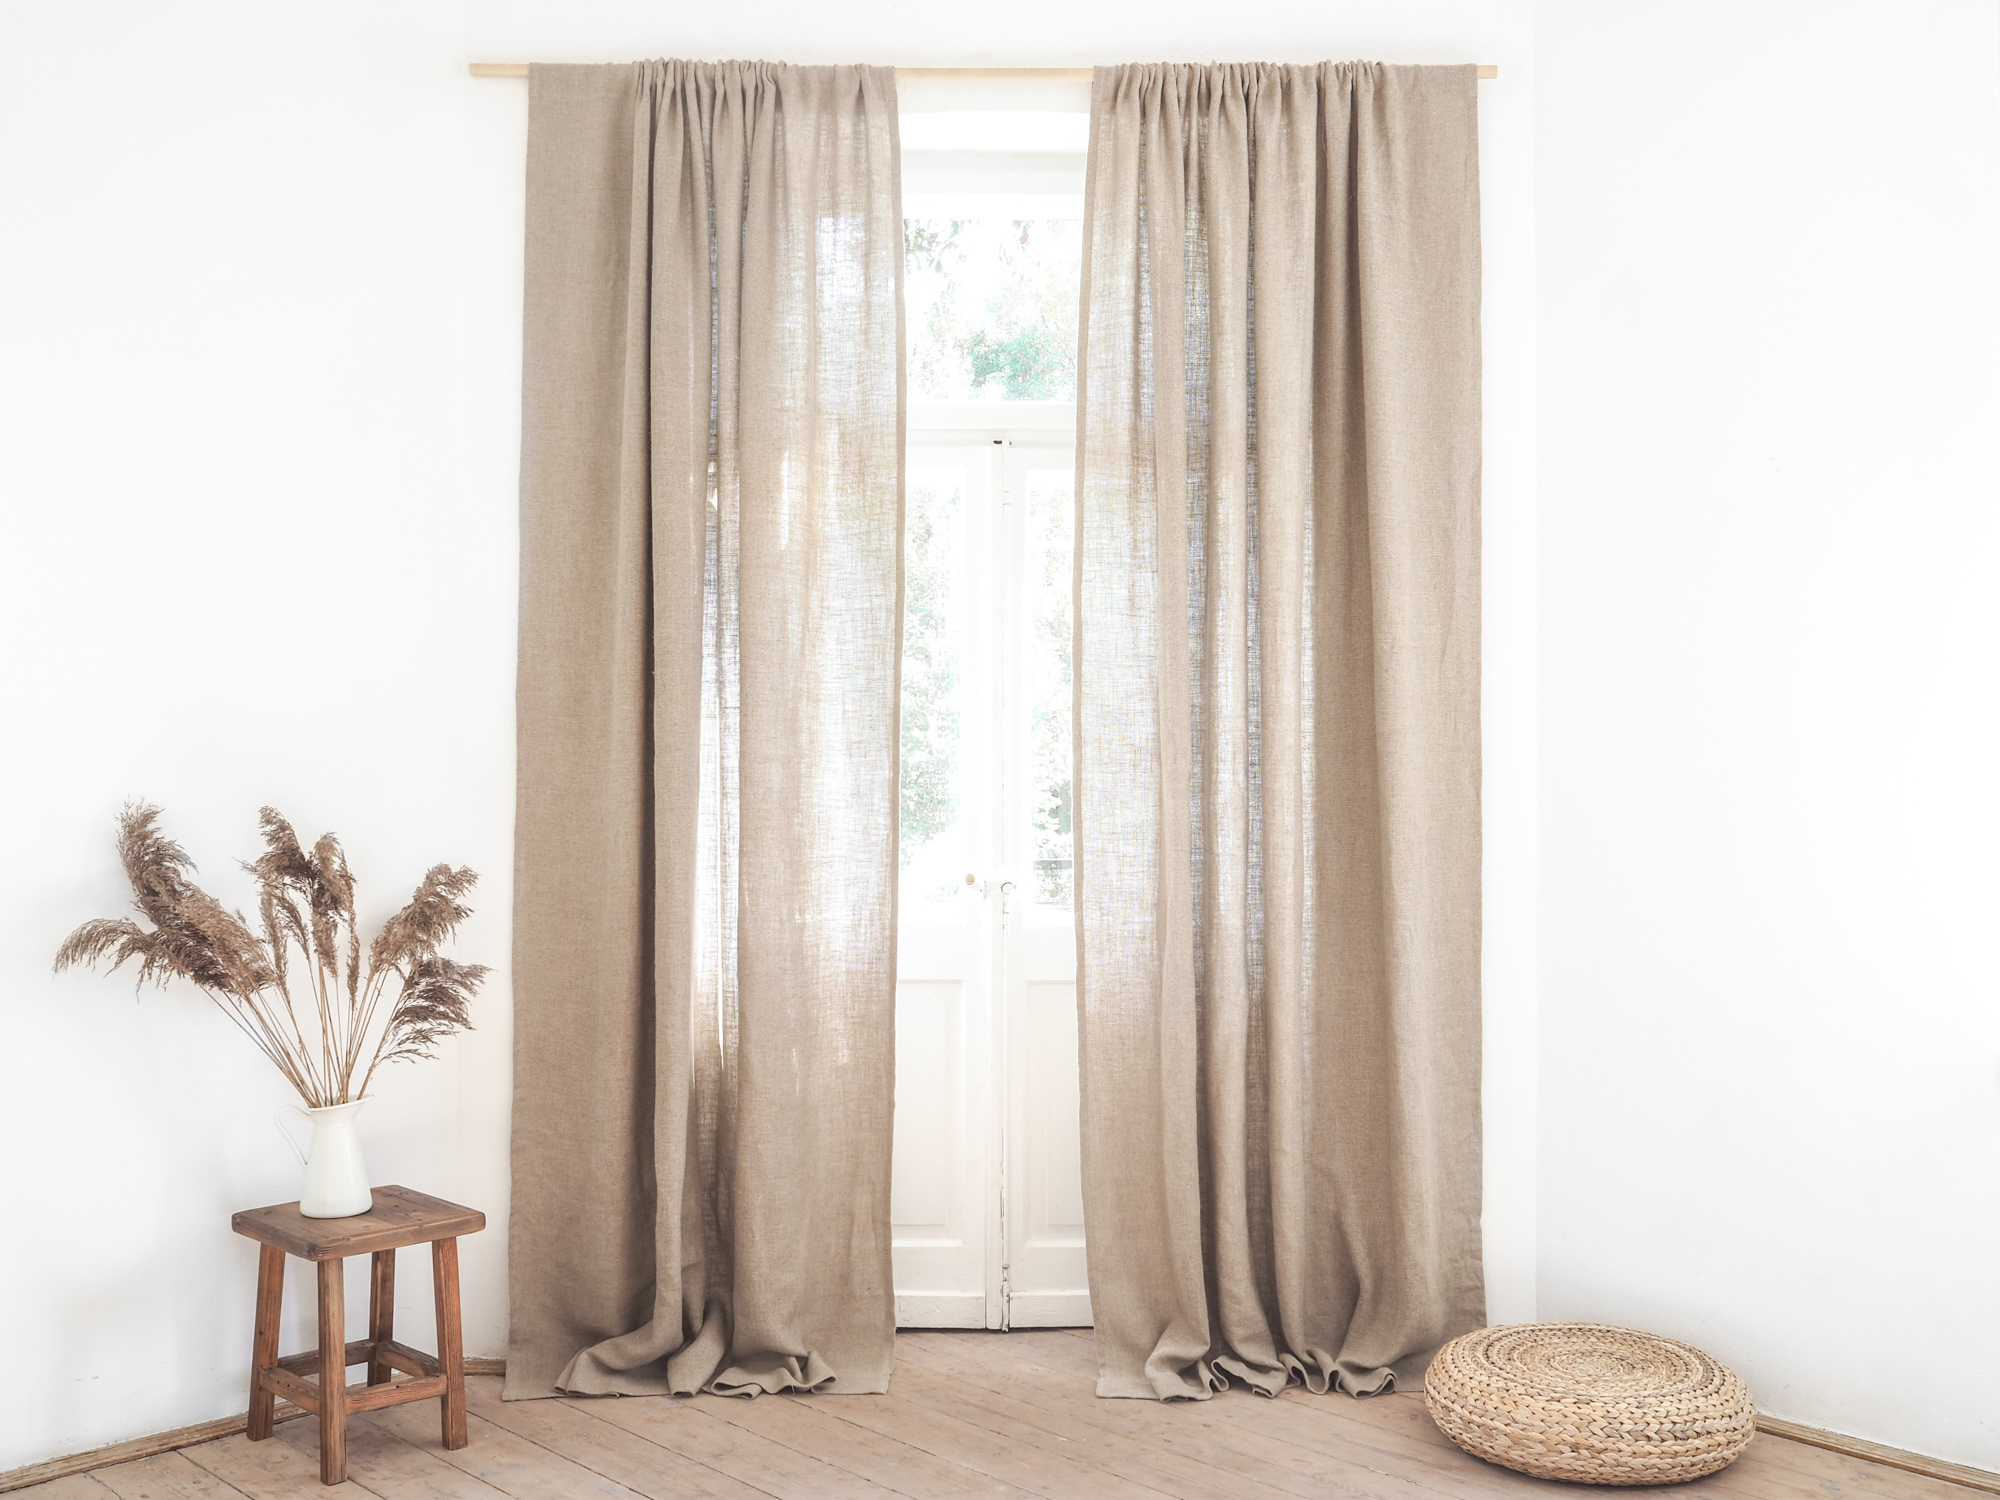 vorhang | rustic linen